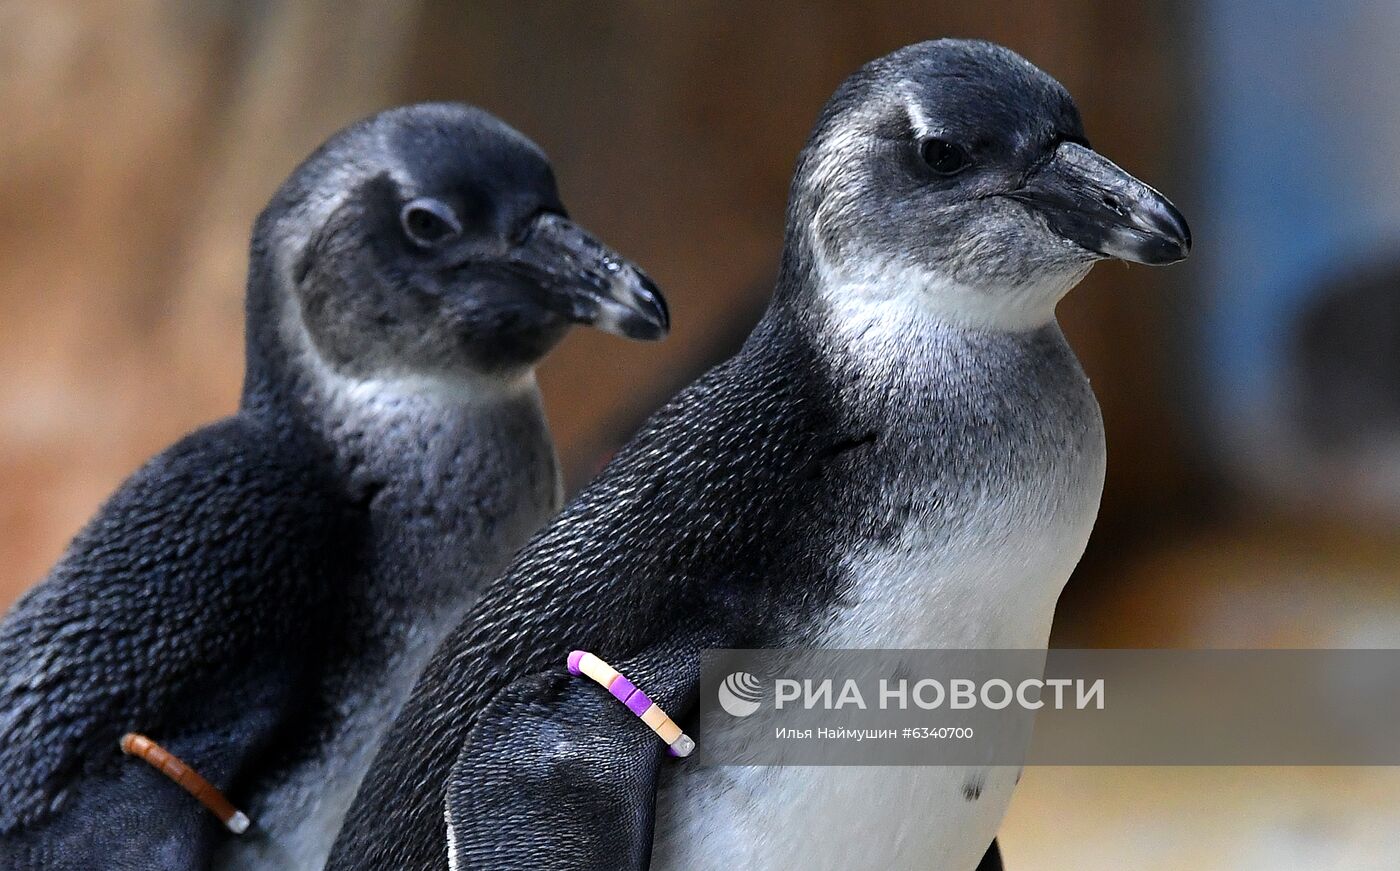 Родившиеся в этом году обитатели зоопарка "Роев ручей" в Красноярске